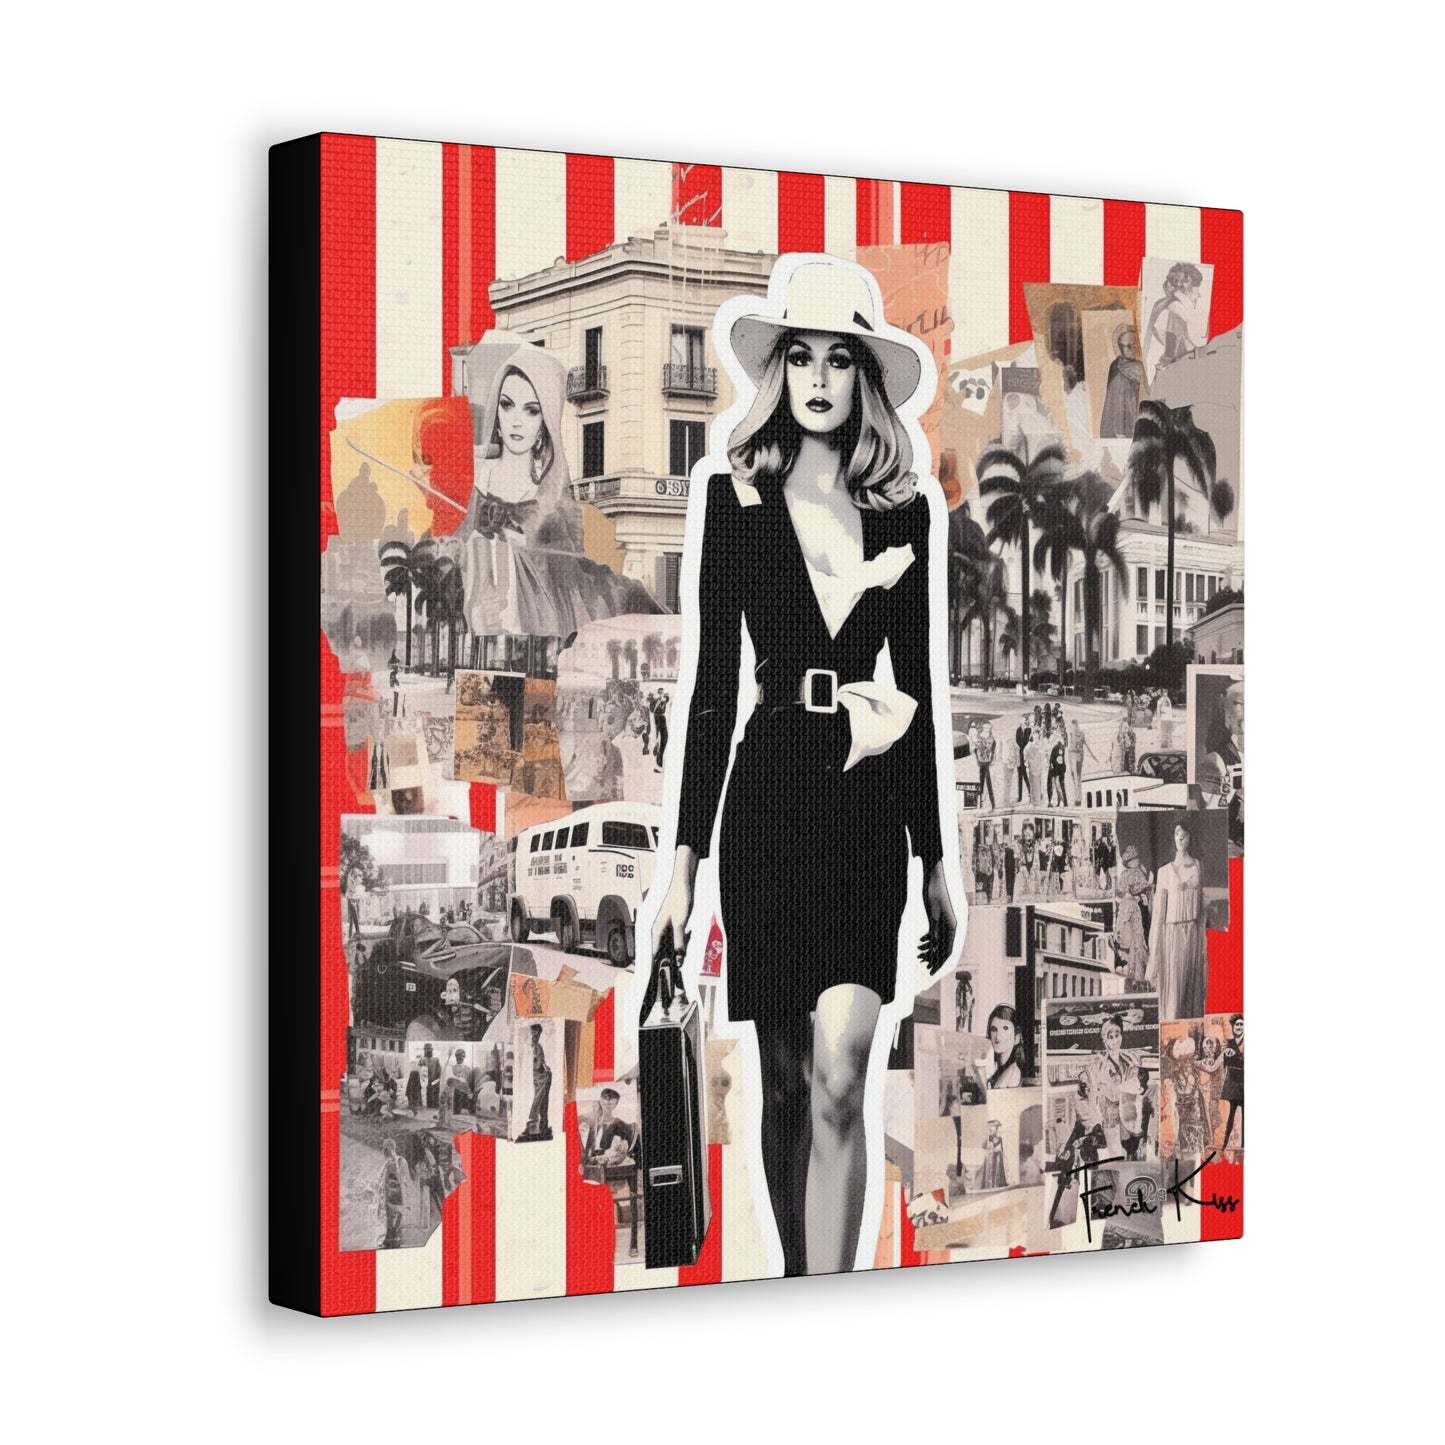 LE TRAVAILLE French Kiss Pop Art, Gallery, Canvas, Art, Vintage, Retro, St. Tropez, Collection, French Riviera, Travel, Cote d'Azur, Cannes, Pop Art, Decor